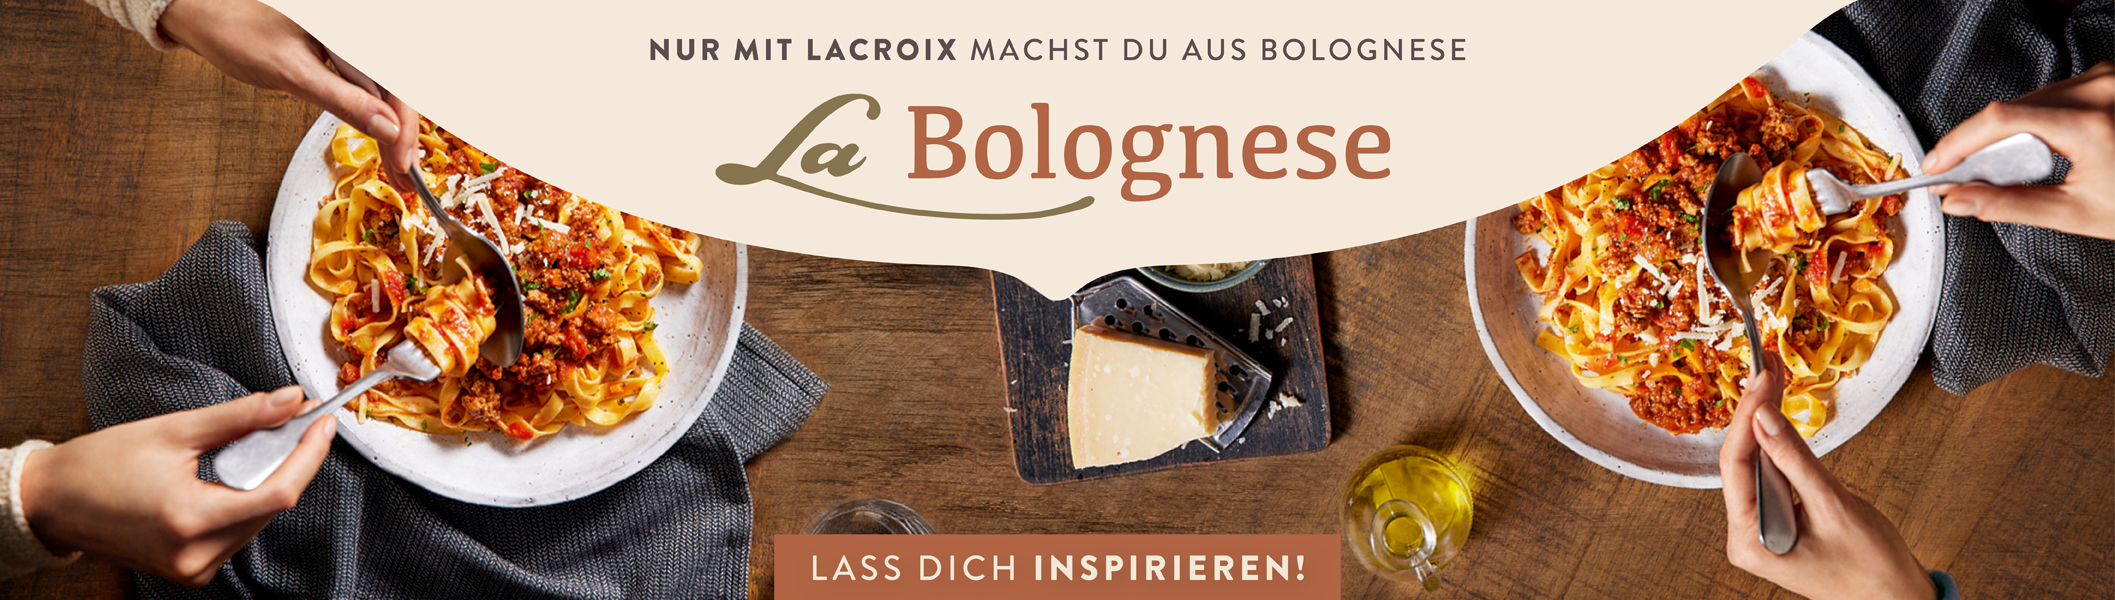 Lacroix Tagliatelle Bolognese mit Rinder Fond